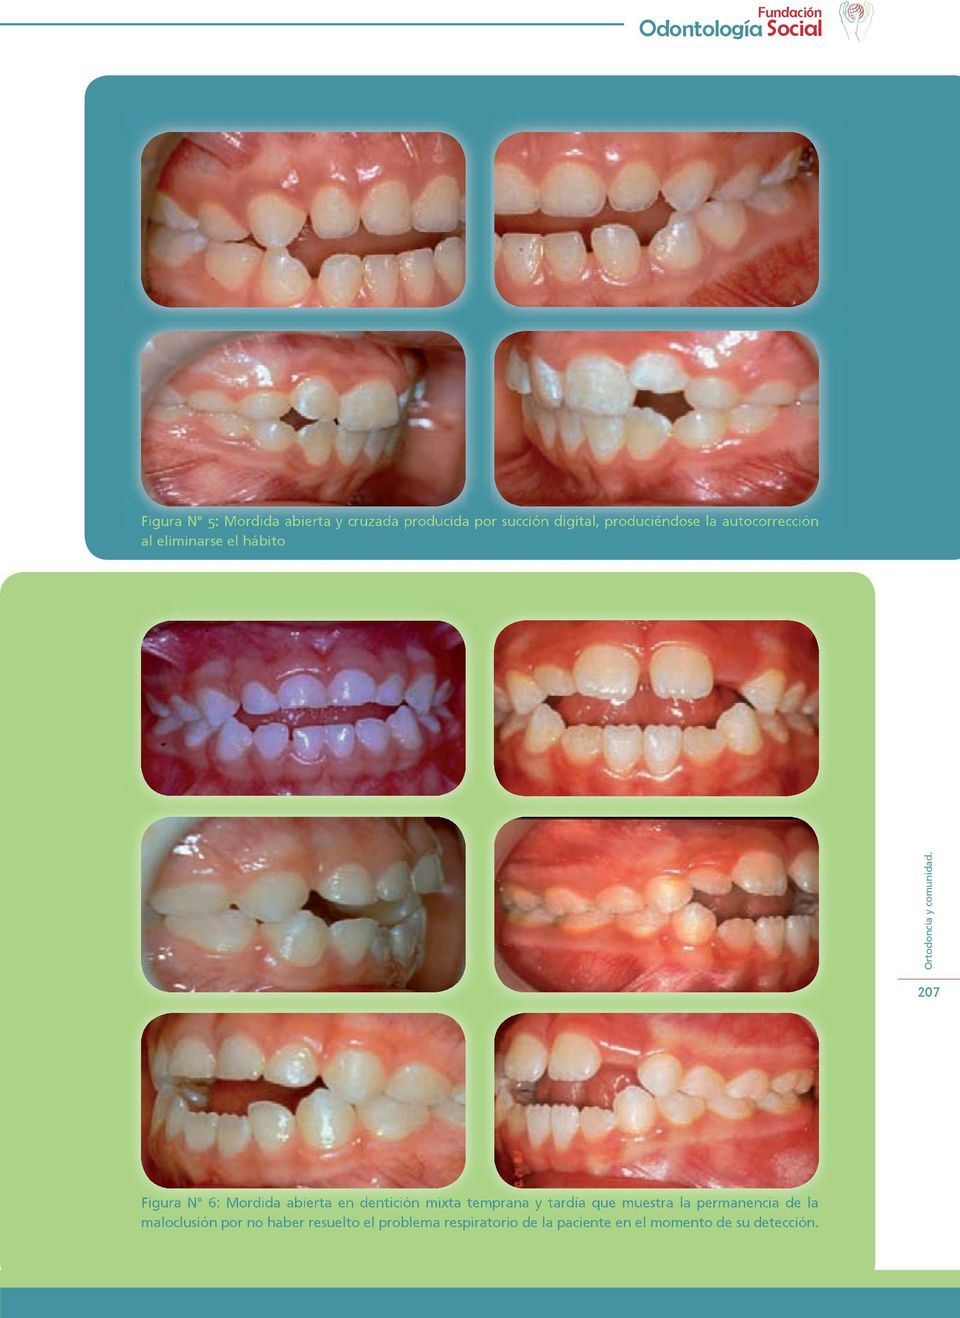 dentición mixta temprana y tardía que muestra la permanencia de la maloclusión por